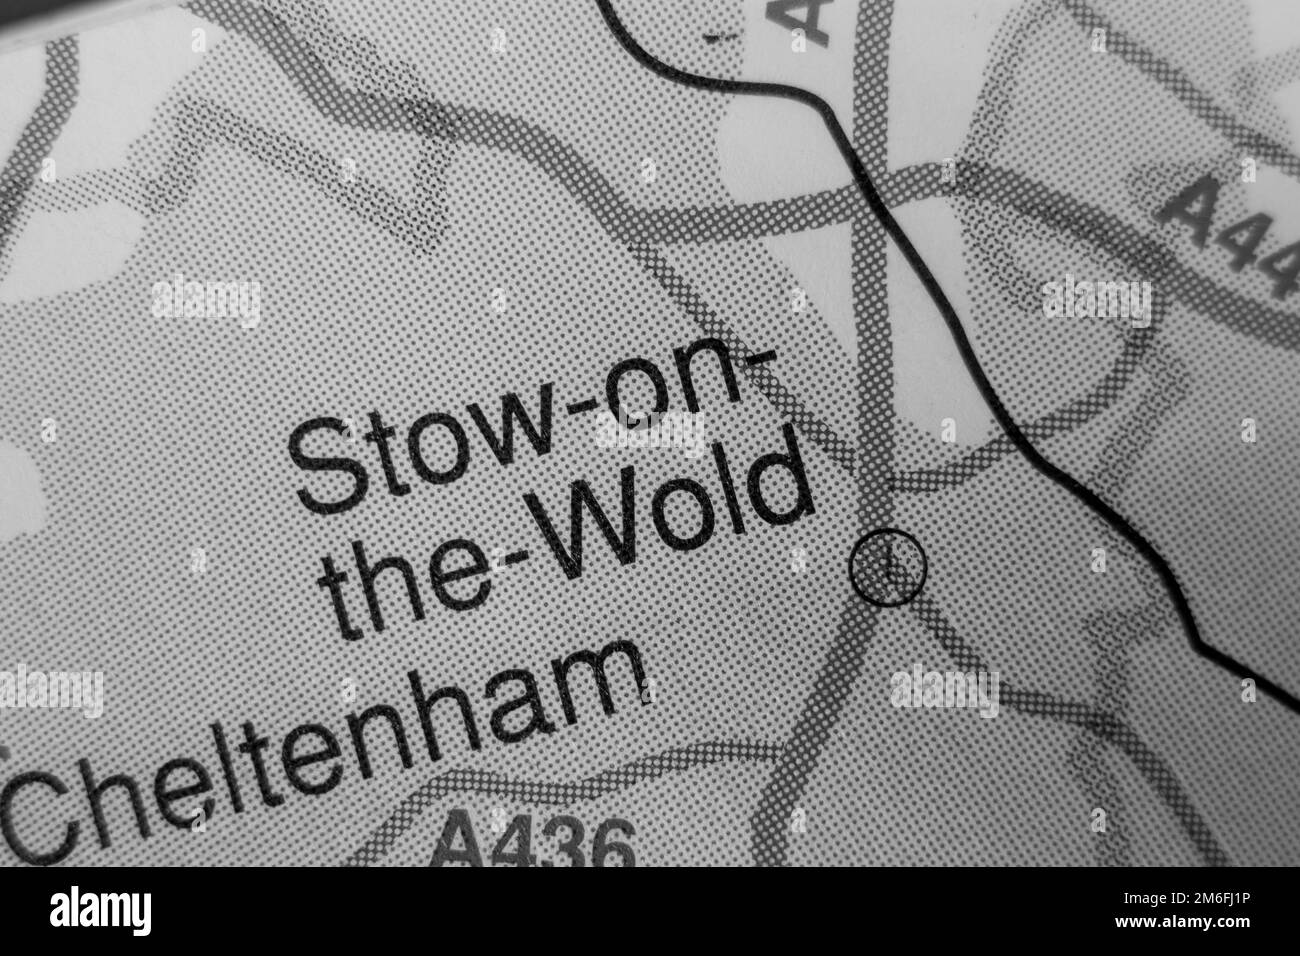 Stow-on-the-Wold, Royaume-Uni carte de l'atlas nom de ville - noir et blanc Banque D'Images